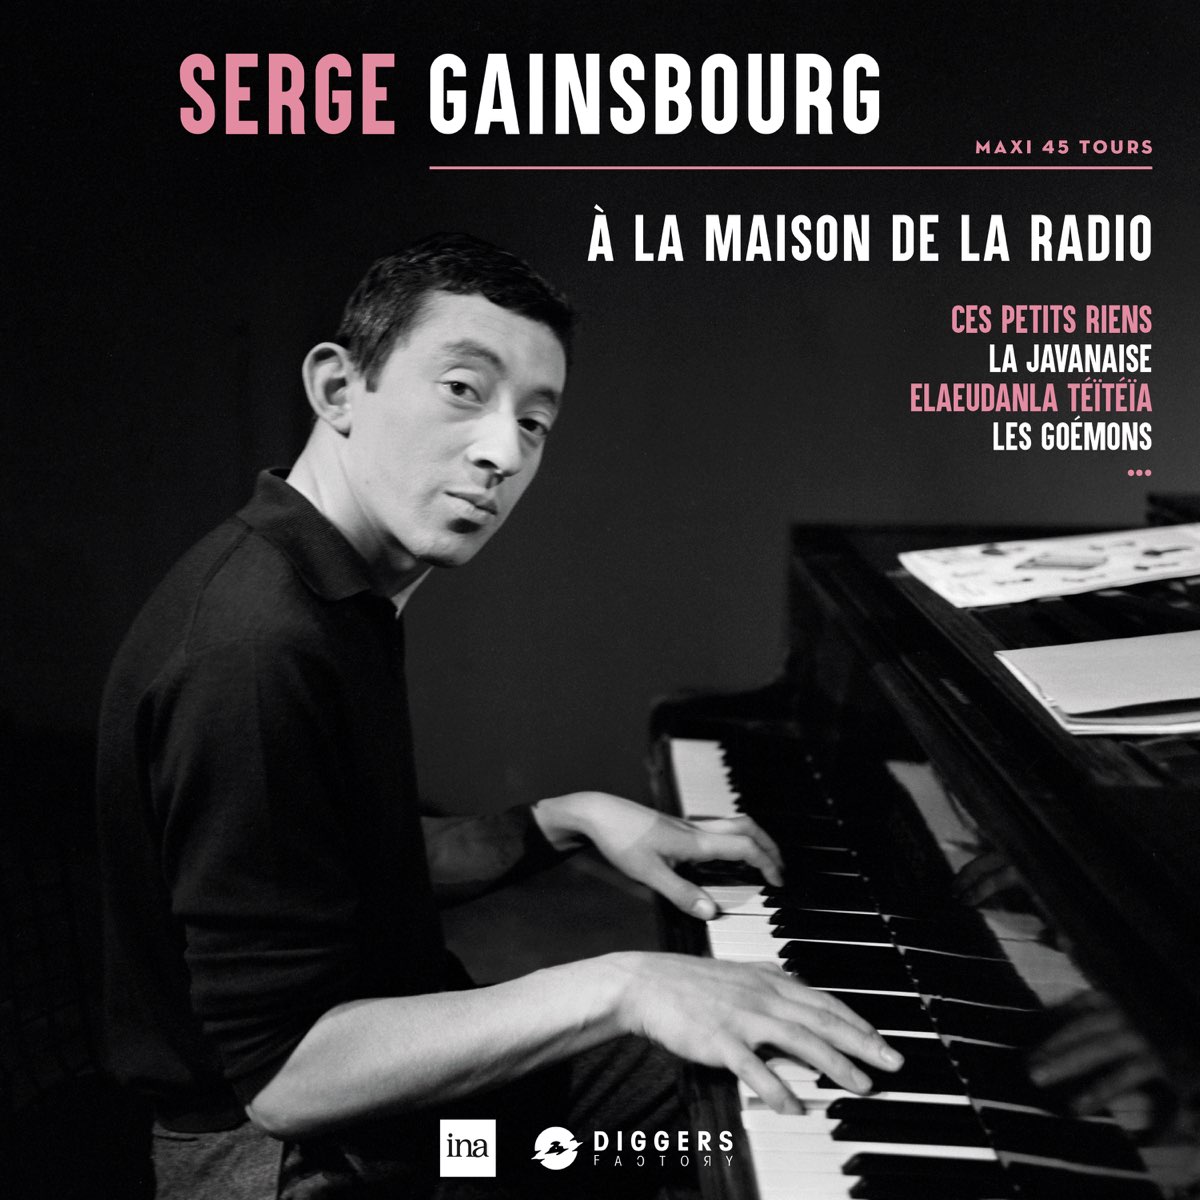 A La Maison de la Radio by Serge Gainsbourg on Apple Music